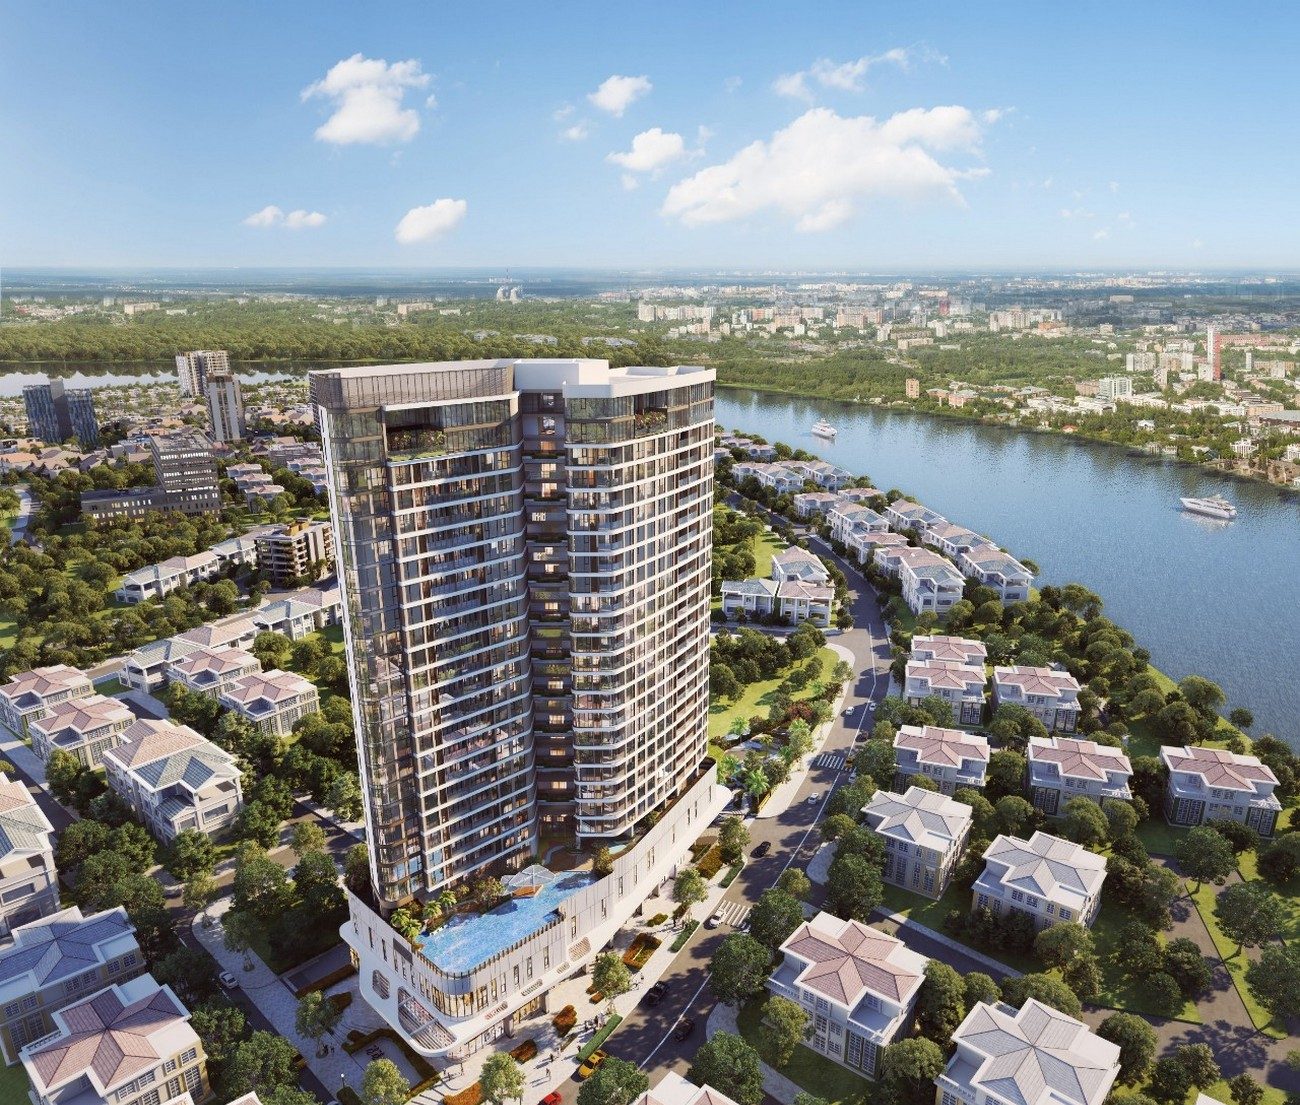 Thông tin chi tiết về dự án căn hộ Thảo Điền Green Towers Quận 2